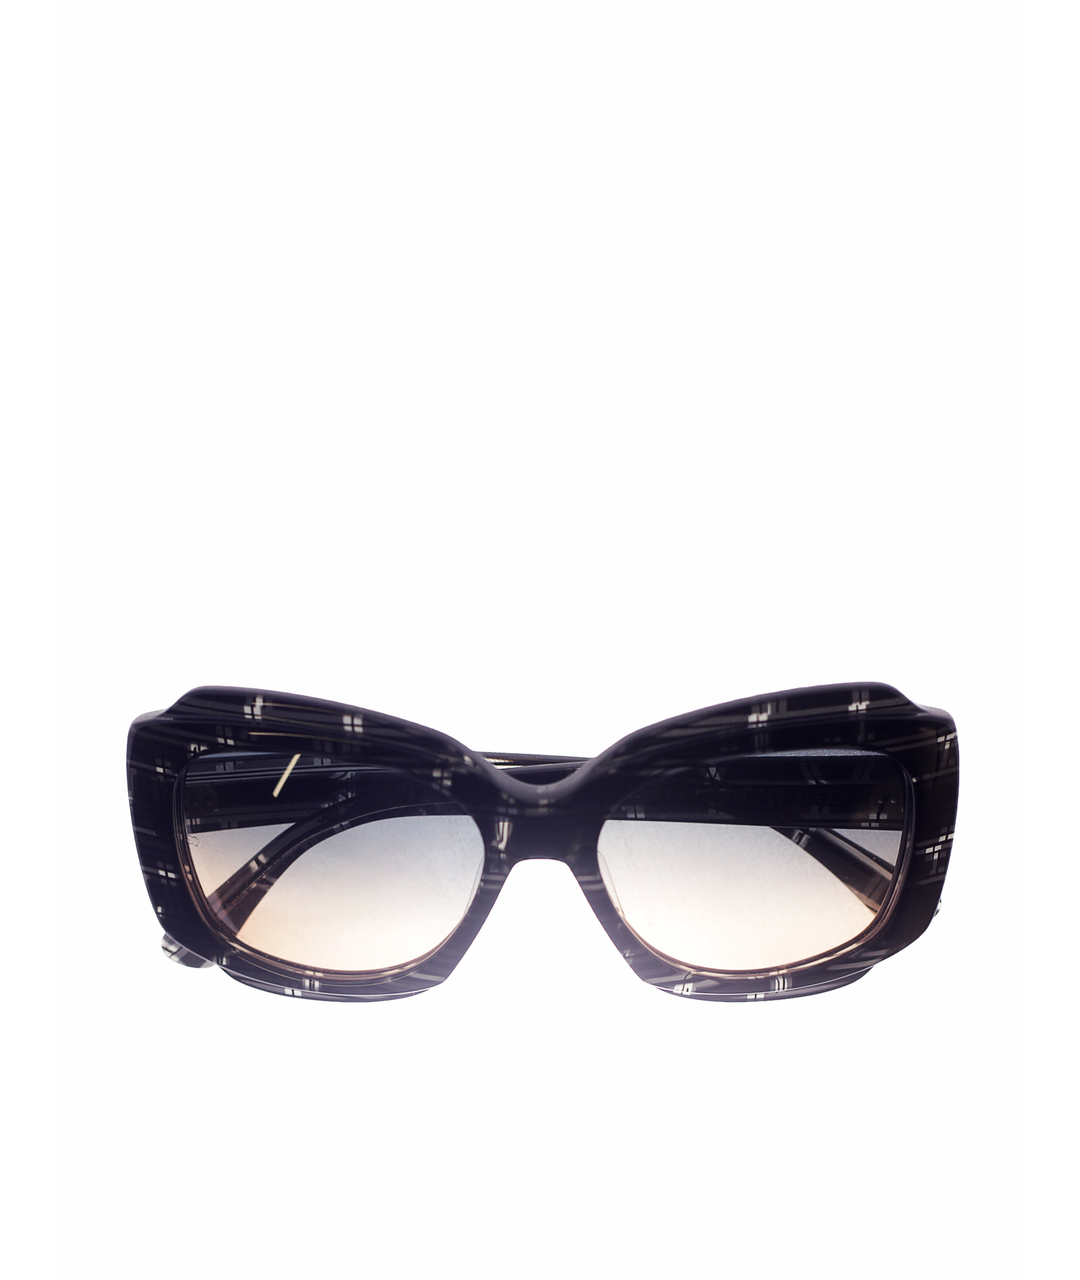 OLIVER GOLDSMITH Пластиковые солнцезащитные очки, фото 1